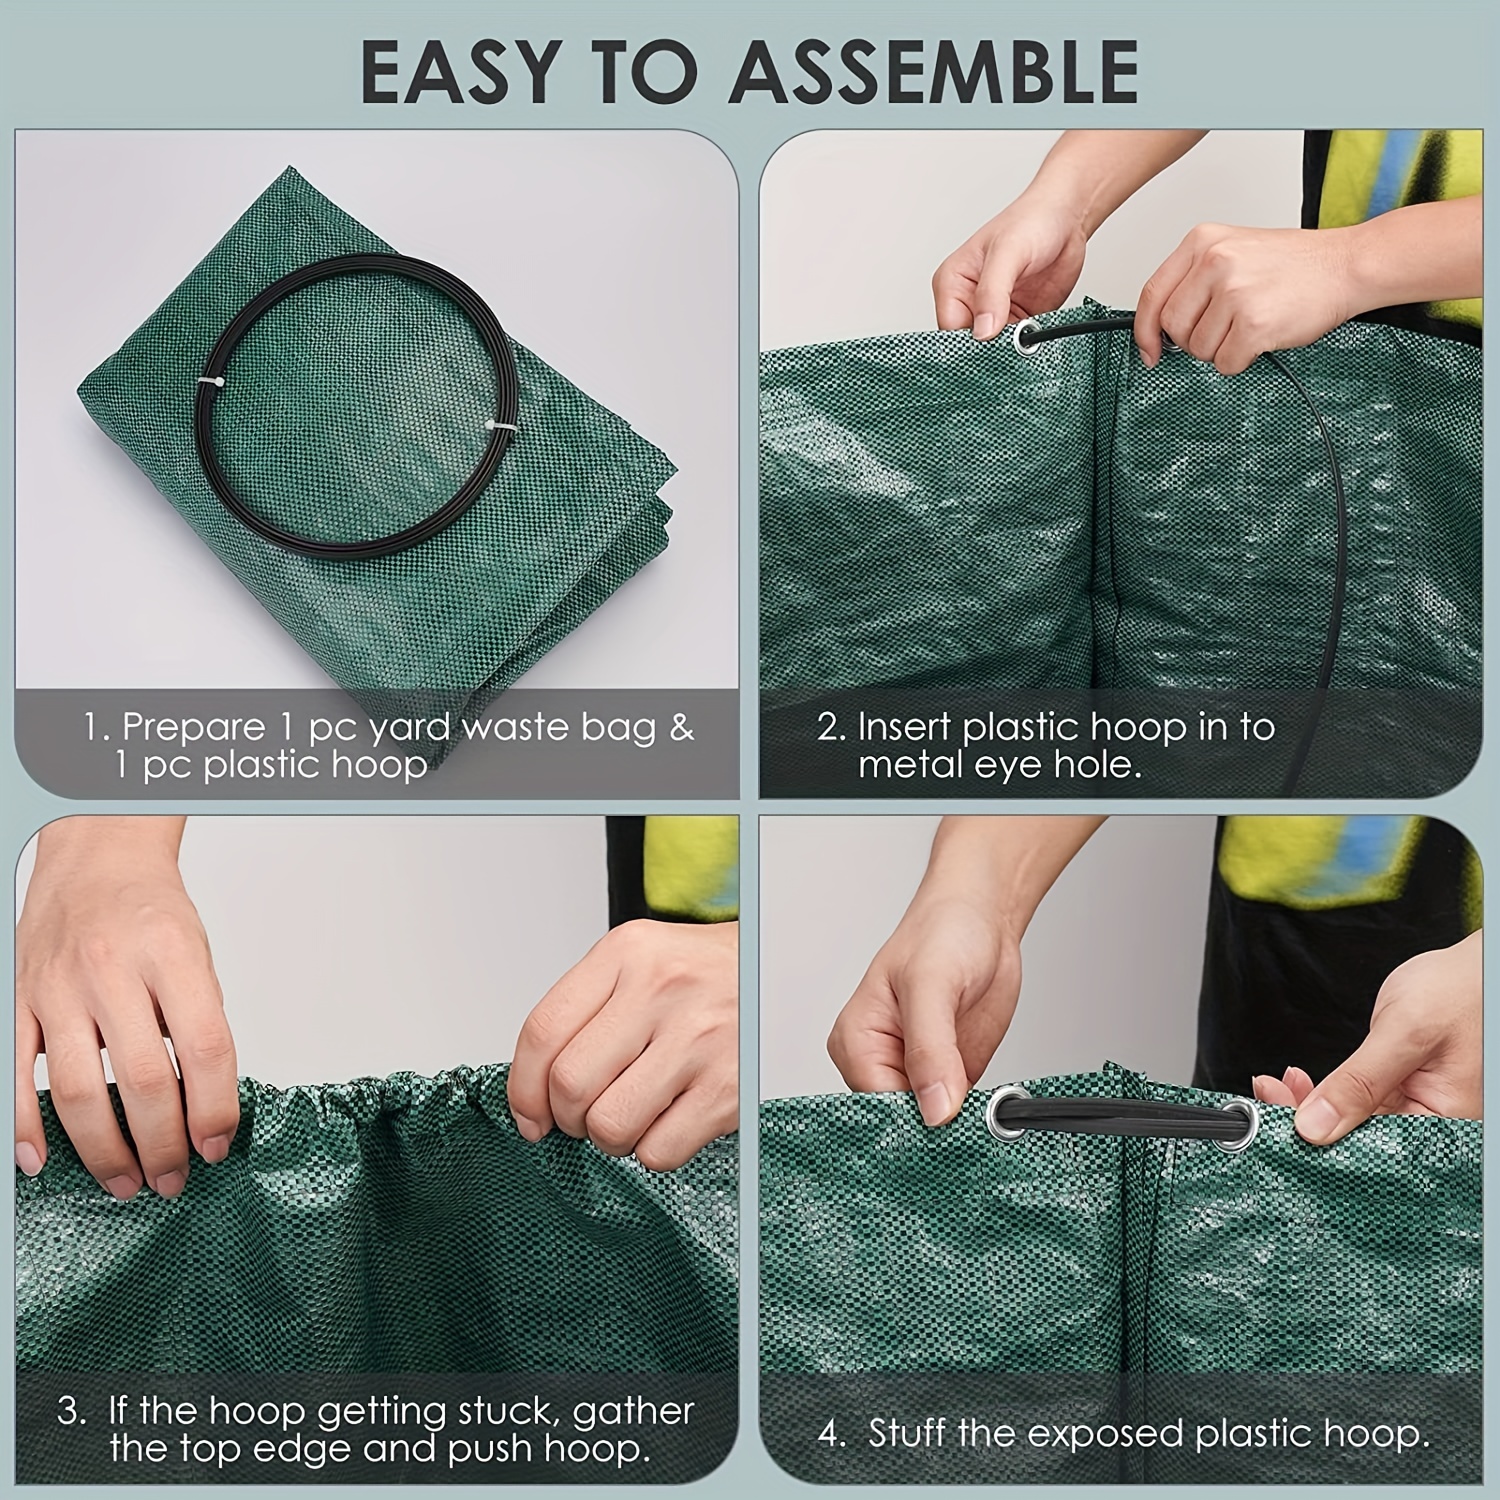 Ejwox 3 Pack Reuseable Garden Waste Bags - 32 Gal Large Leaf Bag Holder/ Heavy Duty Lawn Pool Yard Waste Bags/ Waterproof Debris Bag, Green